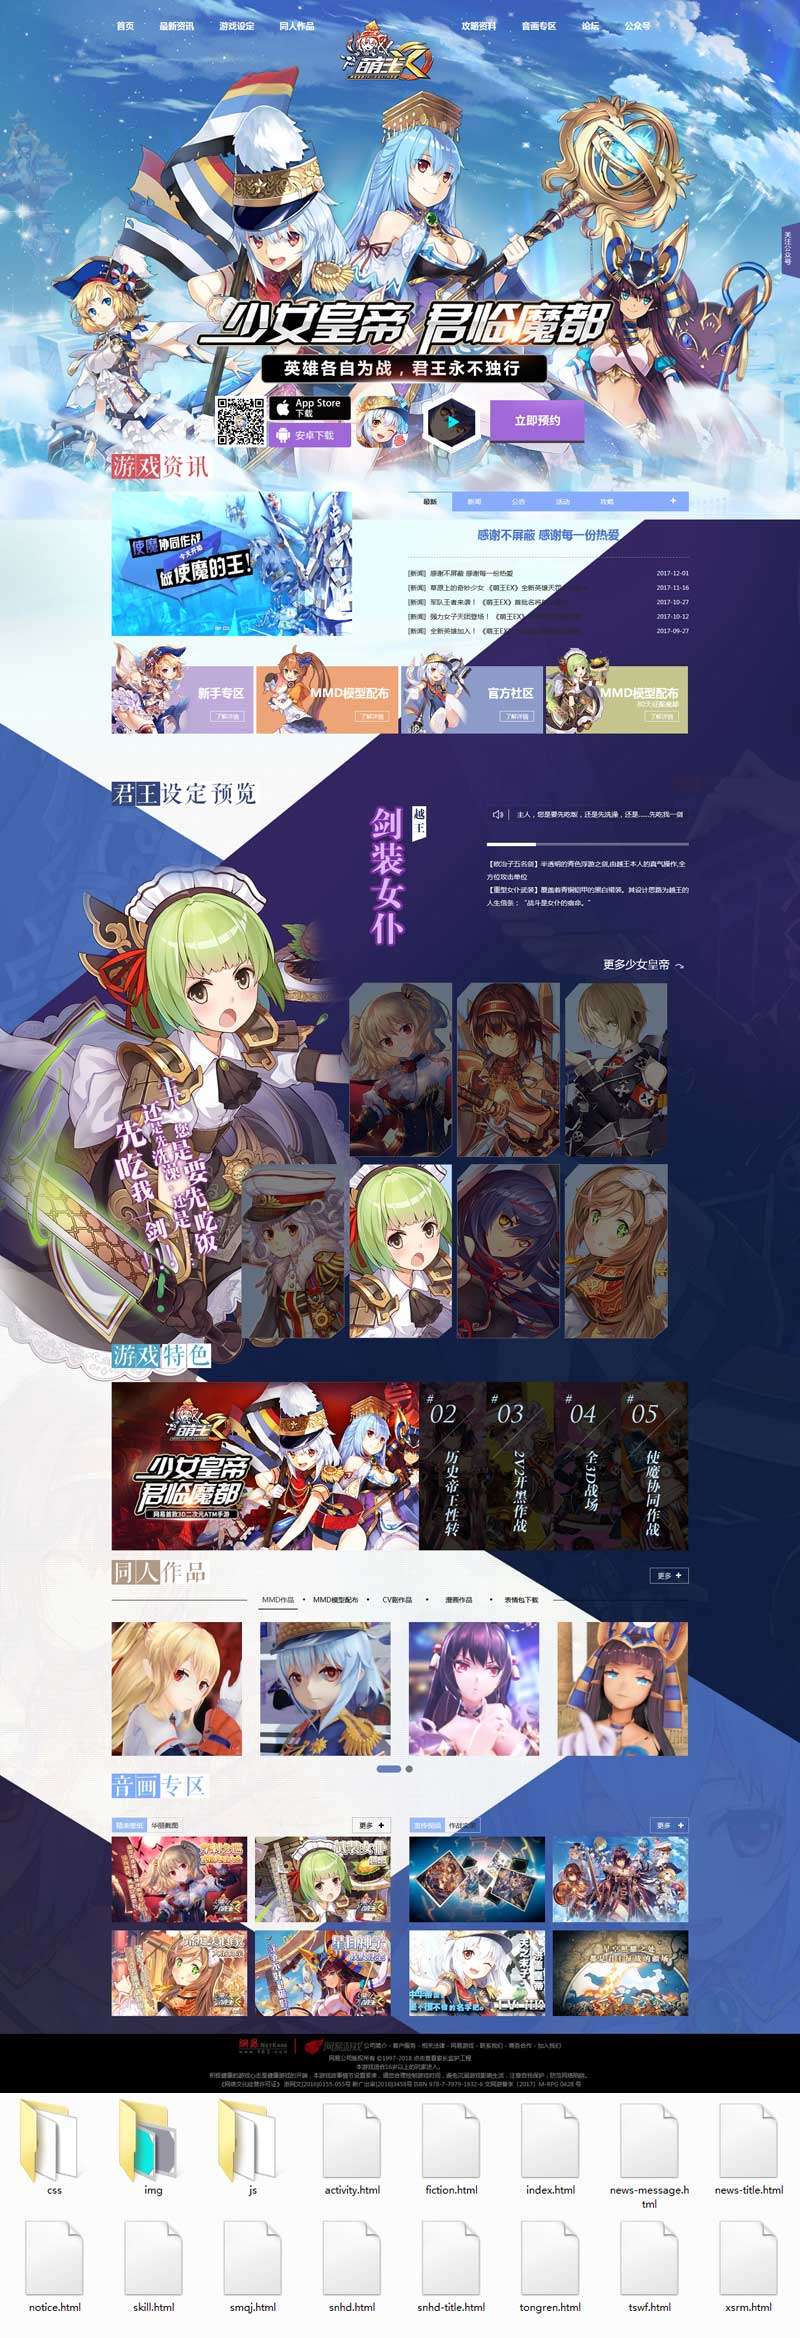 卡通风格HTML萌王游戏官方网站模板6321